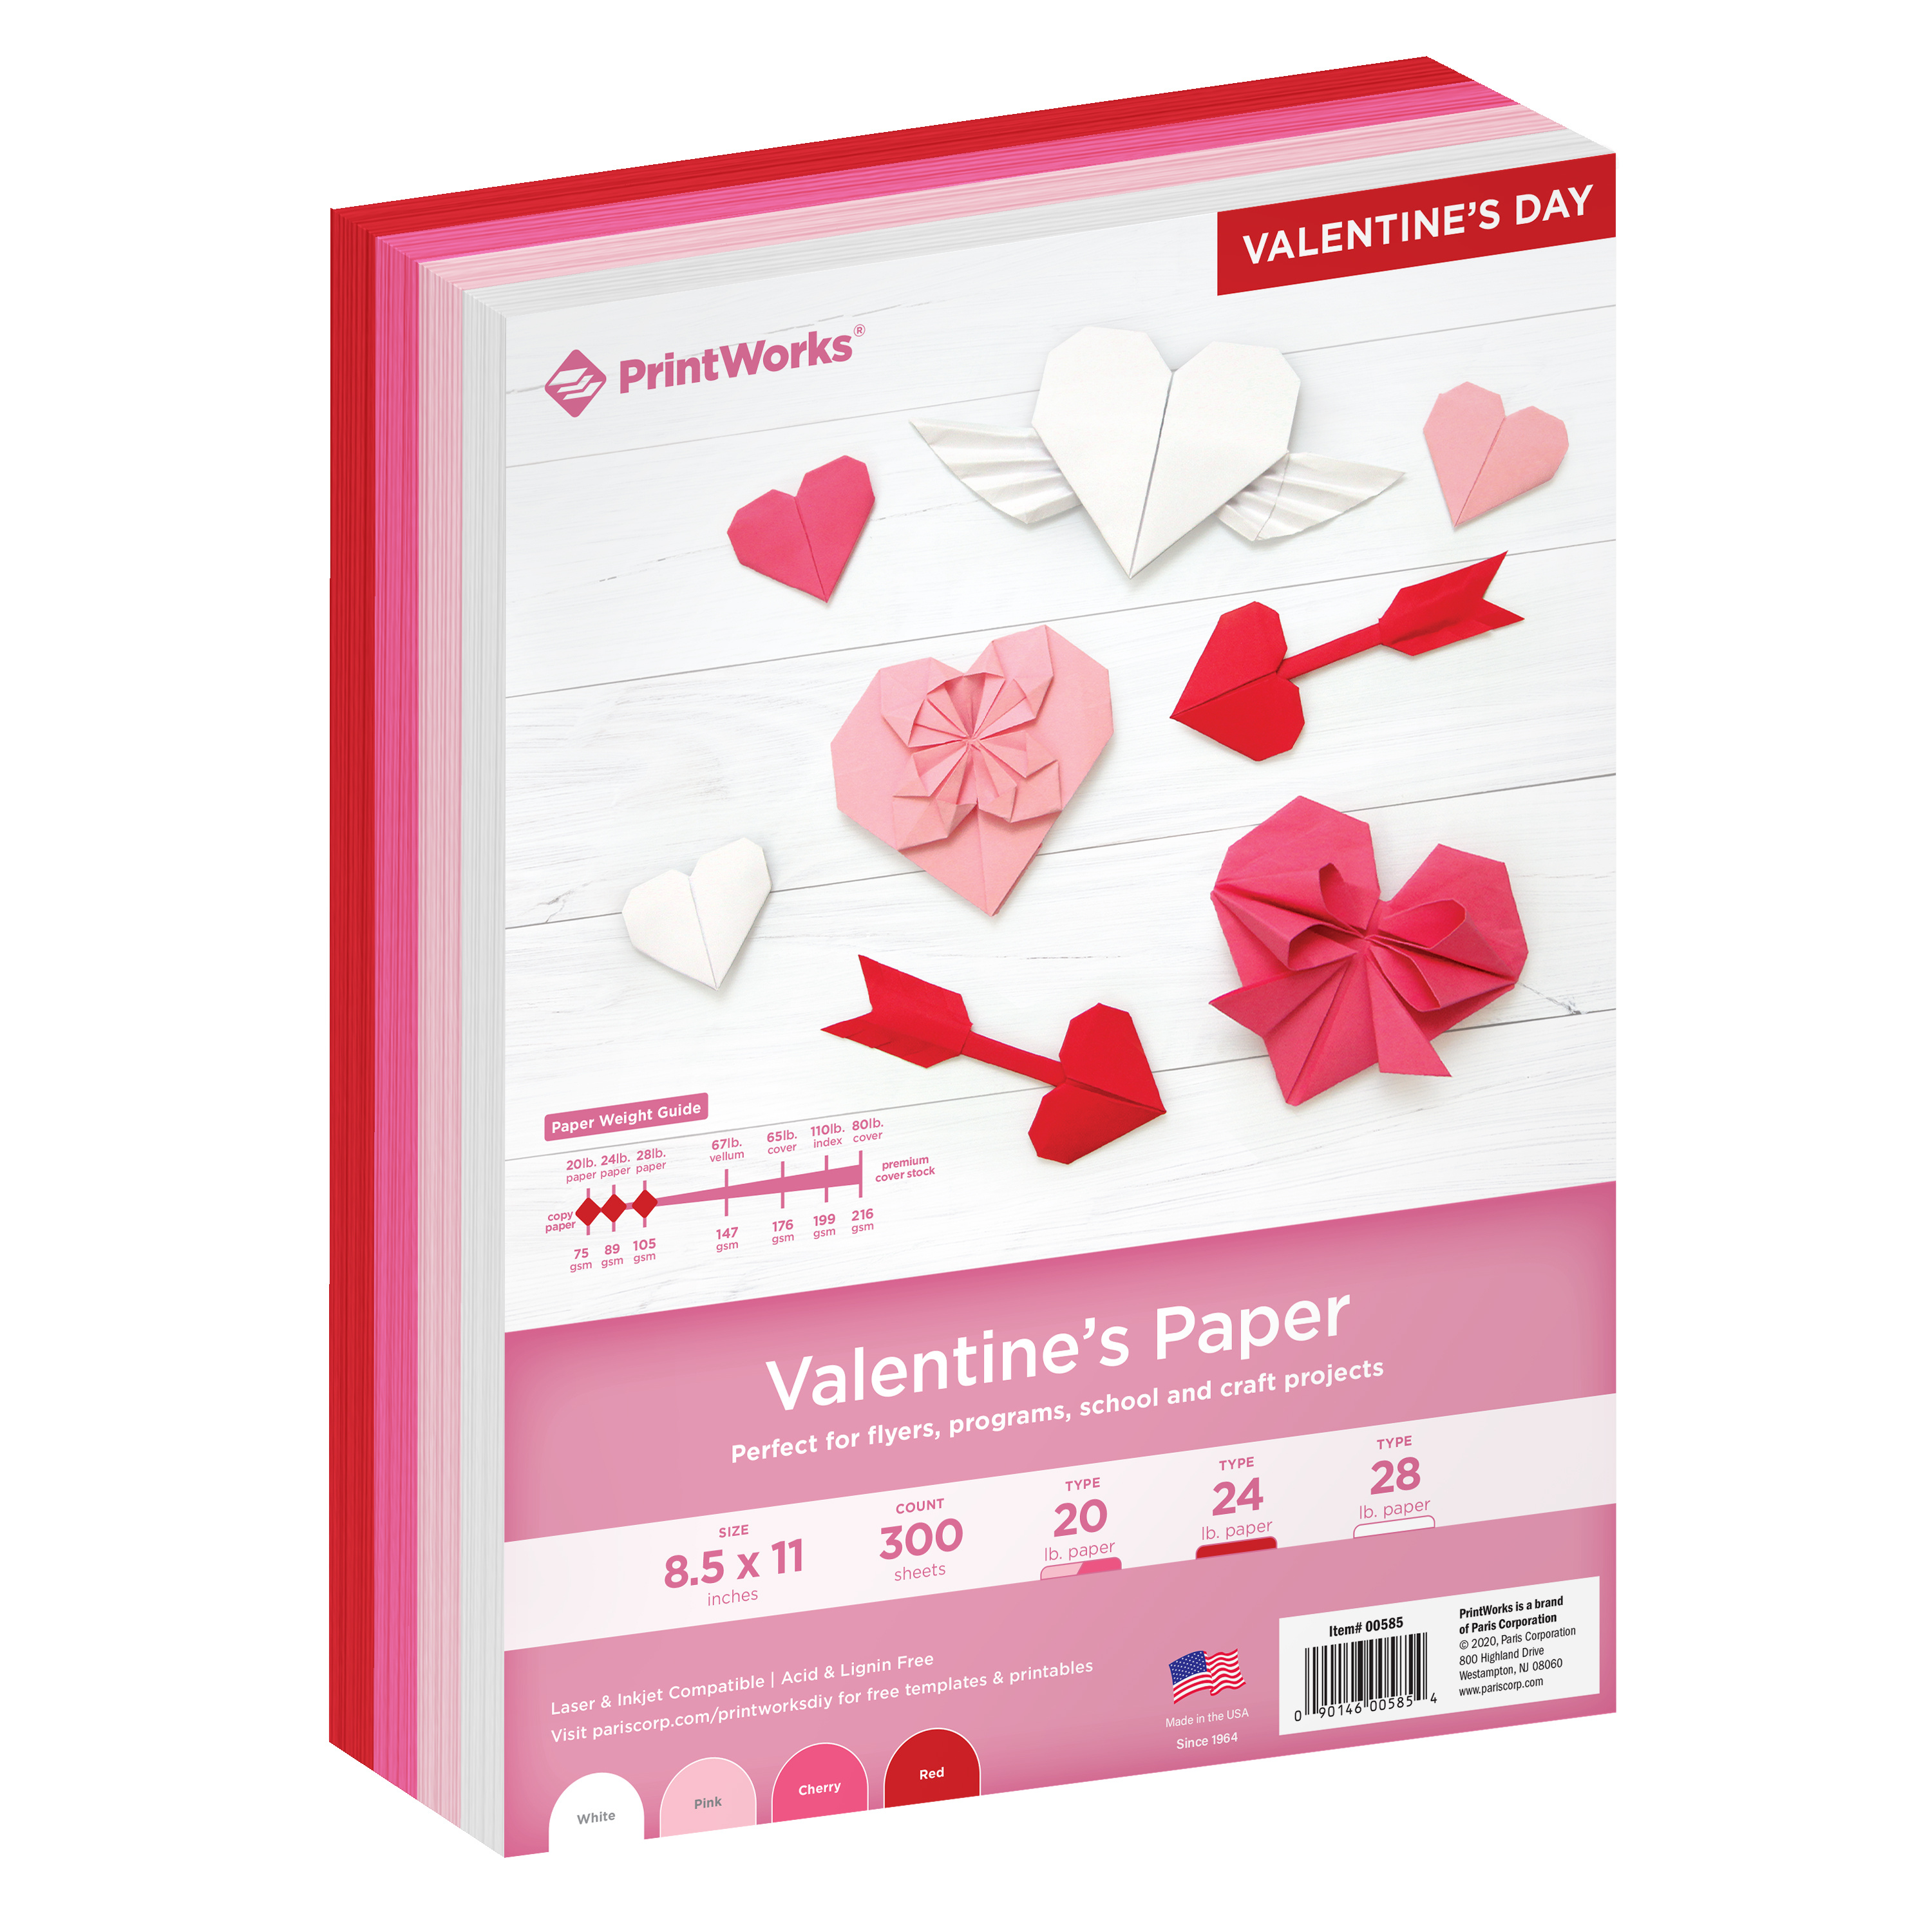 Printworks Valentine's Paper